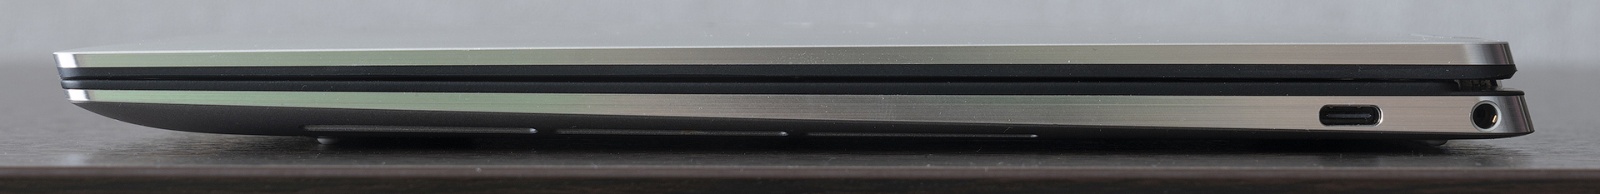 Dell XPS 13 7390 «2 в 1»: лёгкий металлический трансформер с ярким экраном и Intel Ice Lake - 8